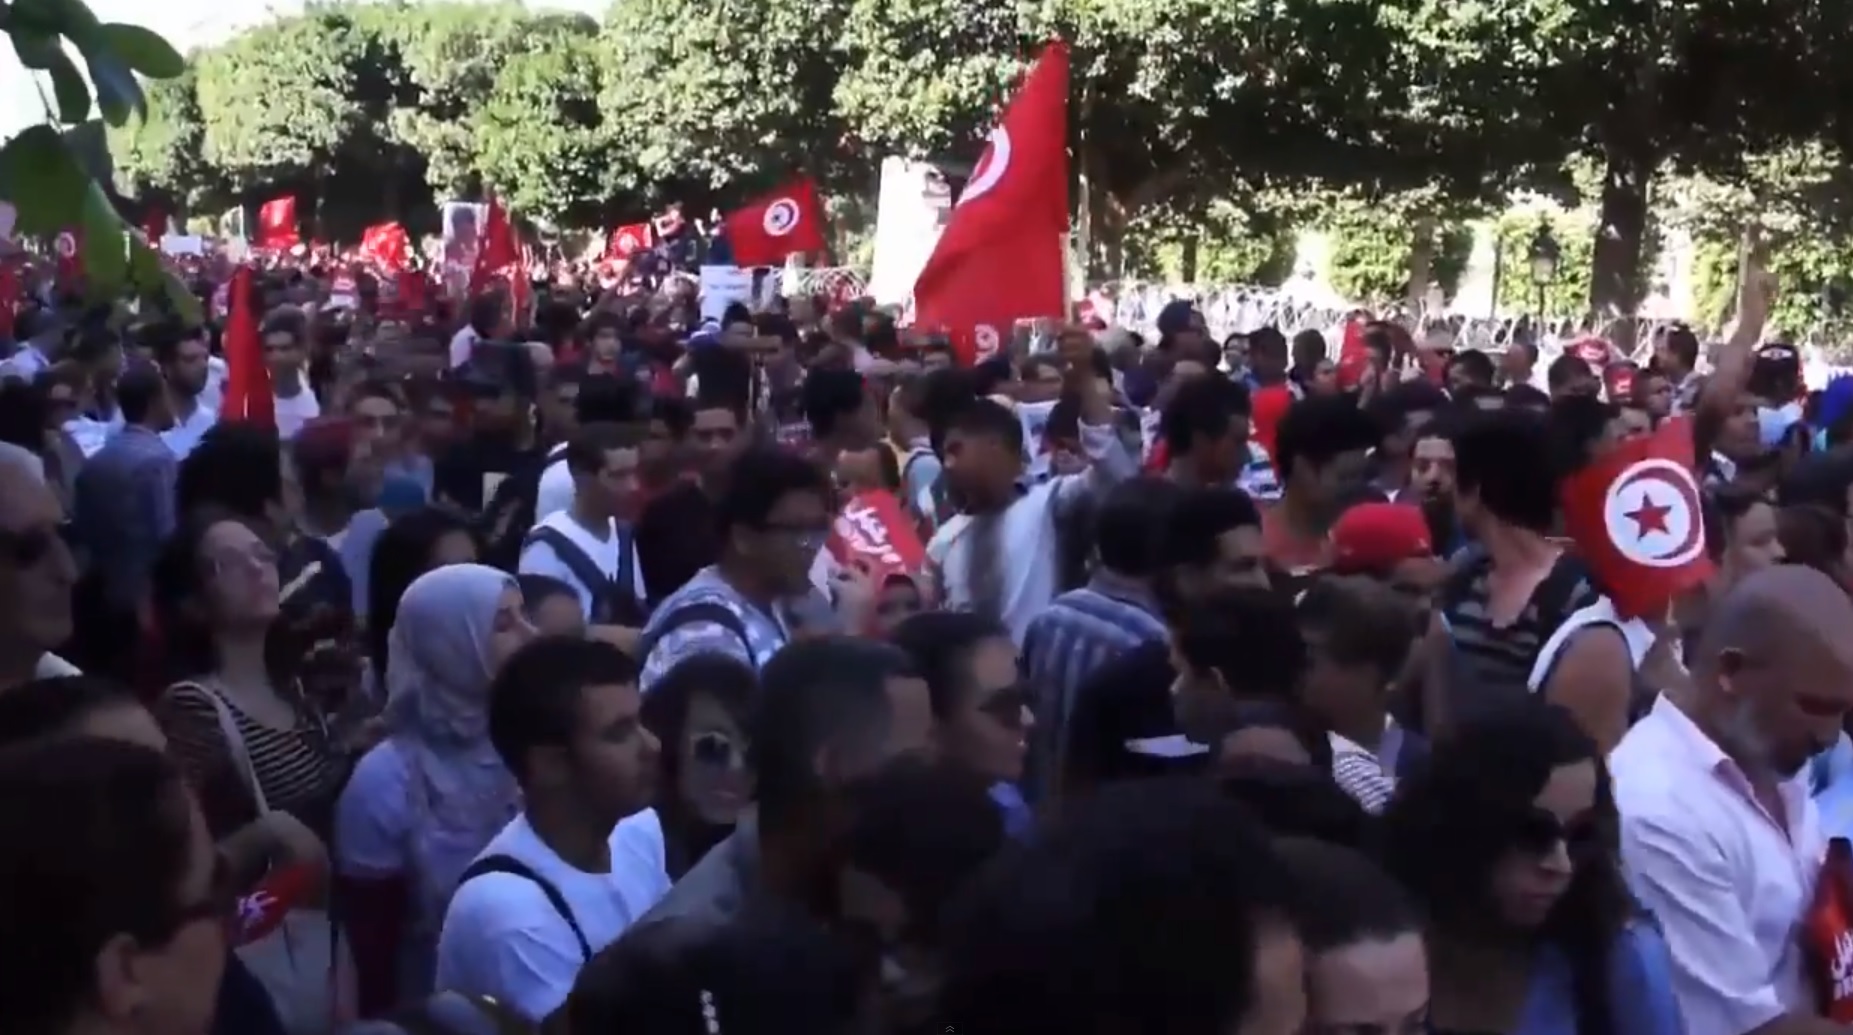 הפגנה נגד הממשלה בתוניסיה, אוקטובר 2013 (תמונה: יוטיוב)